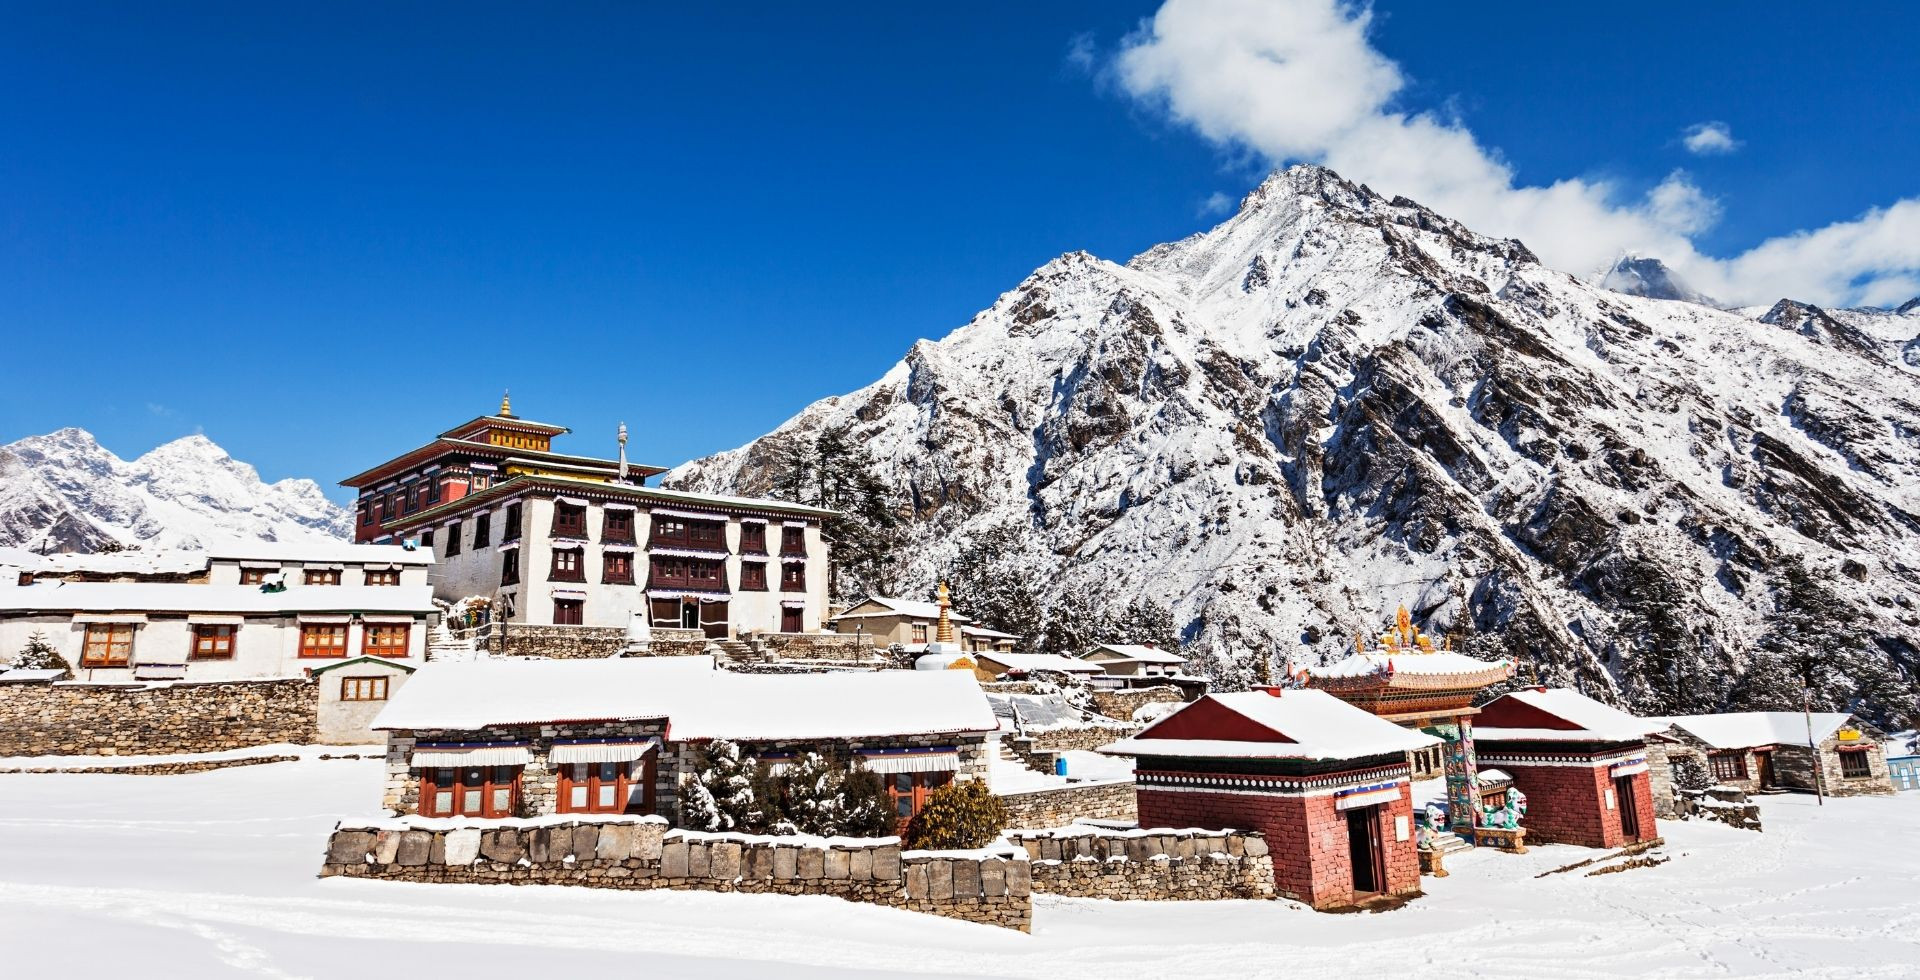 Monasteries in Nepal